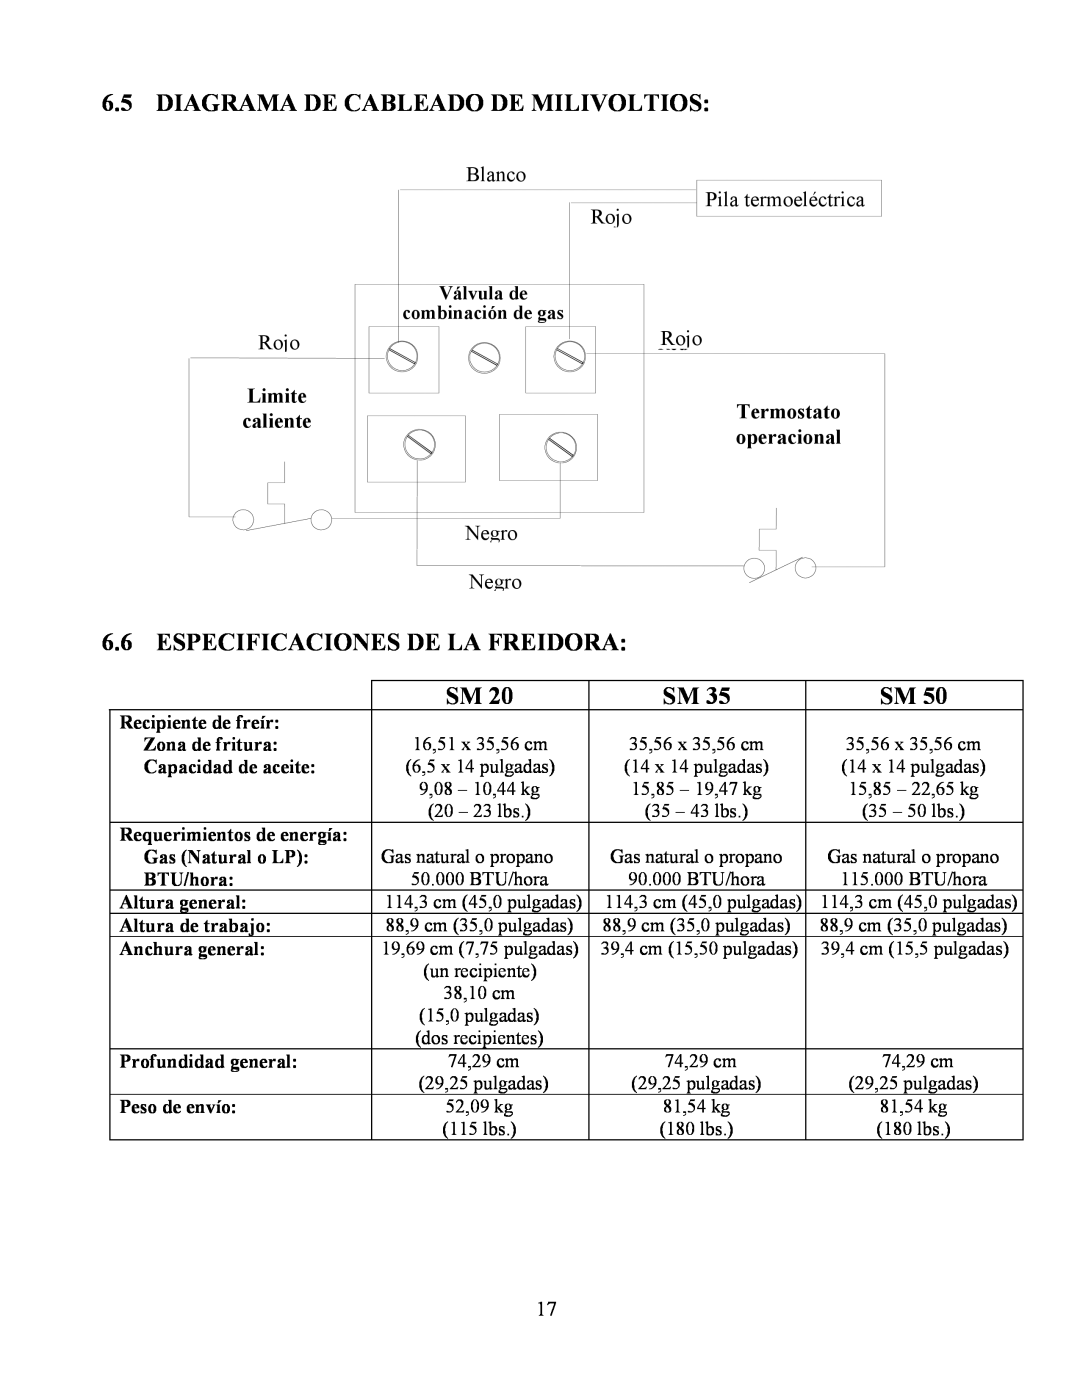 Frymaster Y SM80 Diagrama De Cableado De Milivoltios, Especificaciones De La Freidora, Hi-Limit, Operating, Thermostat 